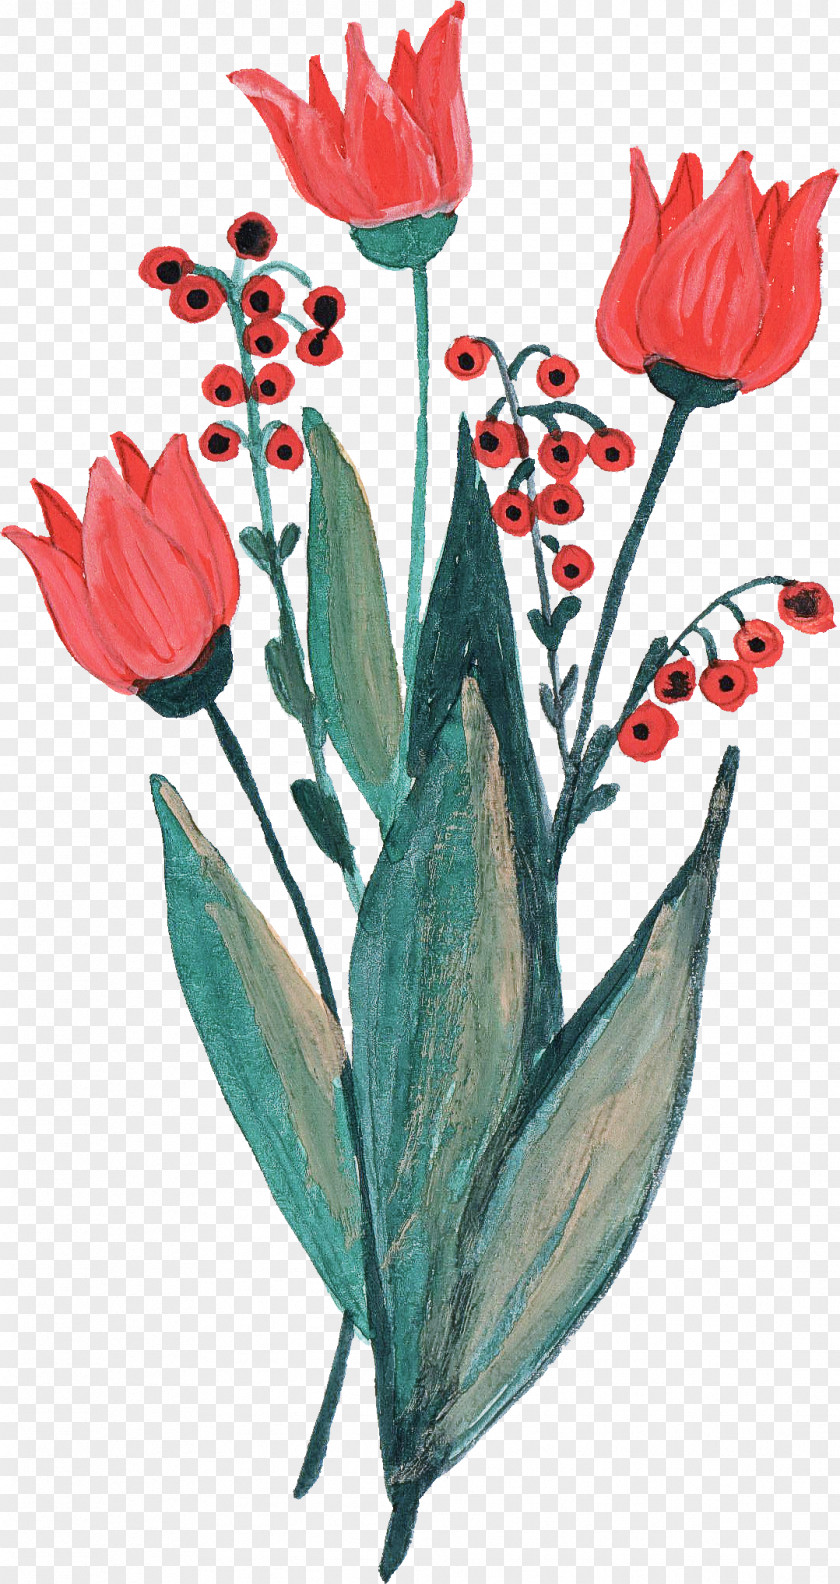 Plant Stem Pedicel Flower Flowering Tulip Leaf PNG